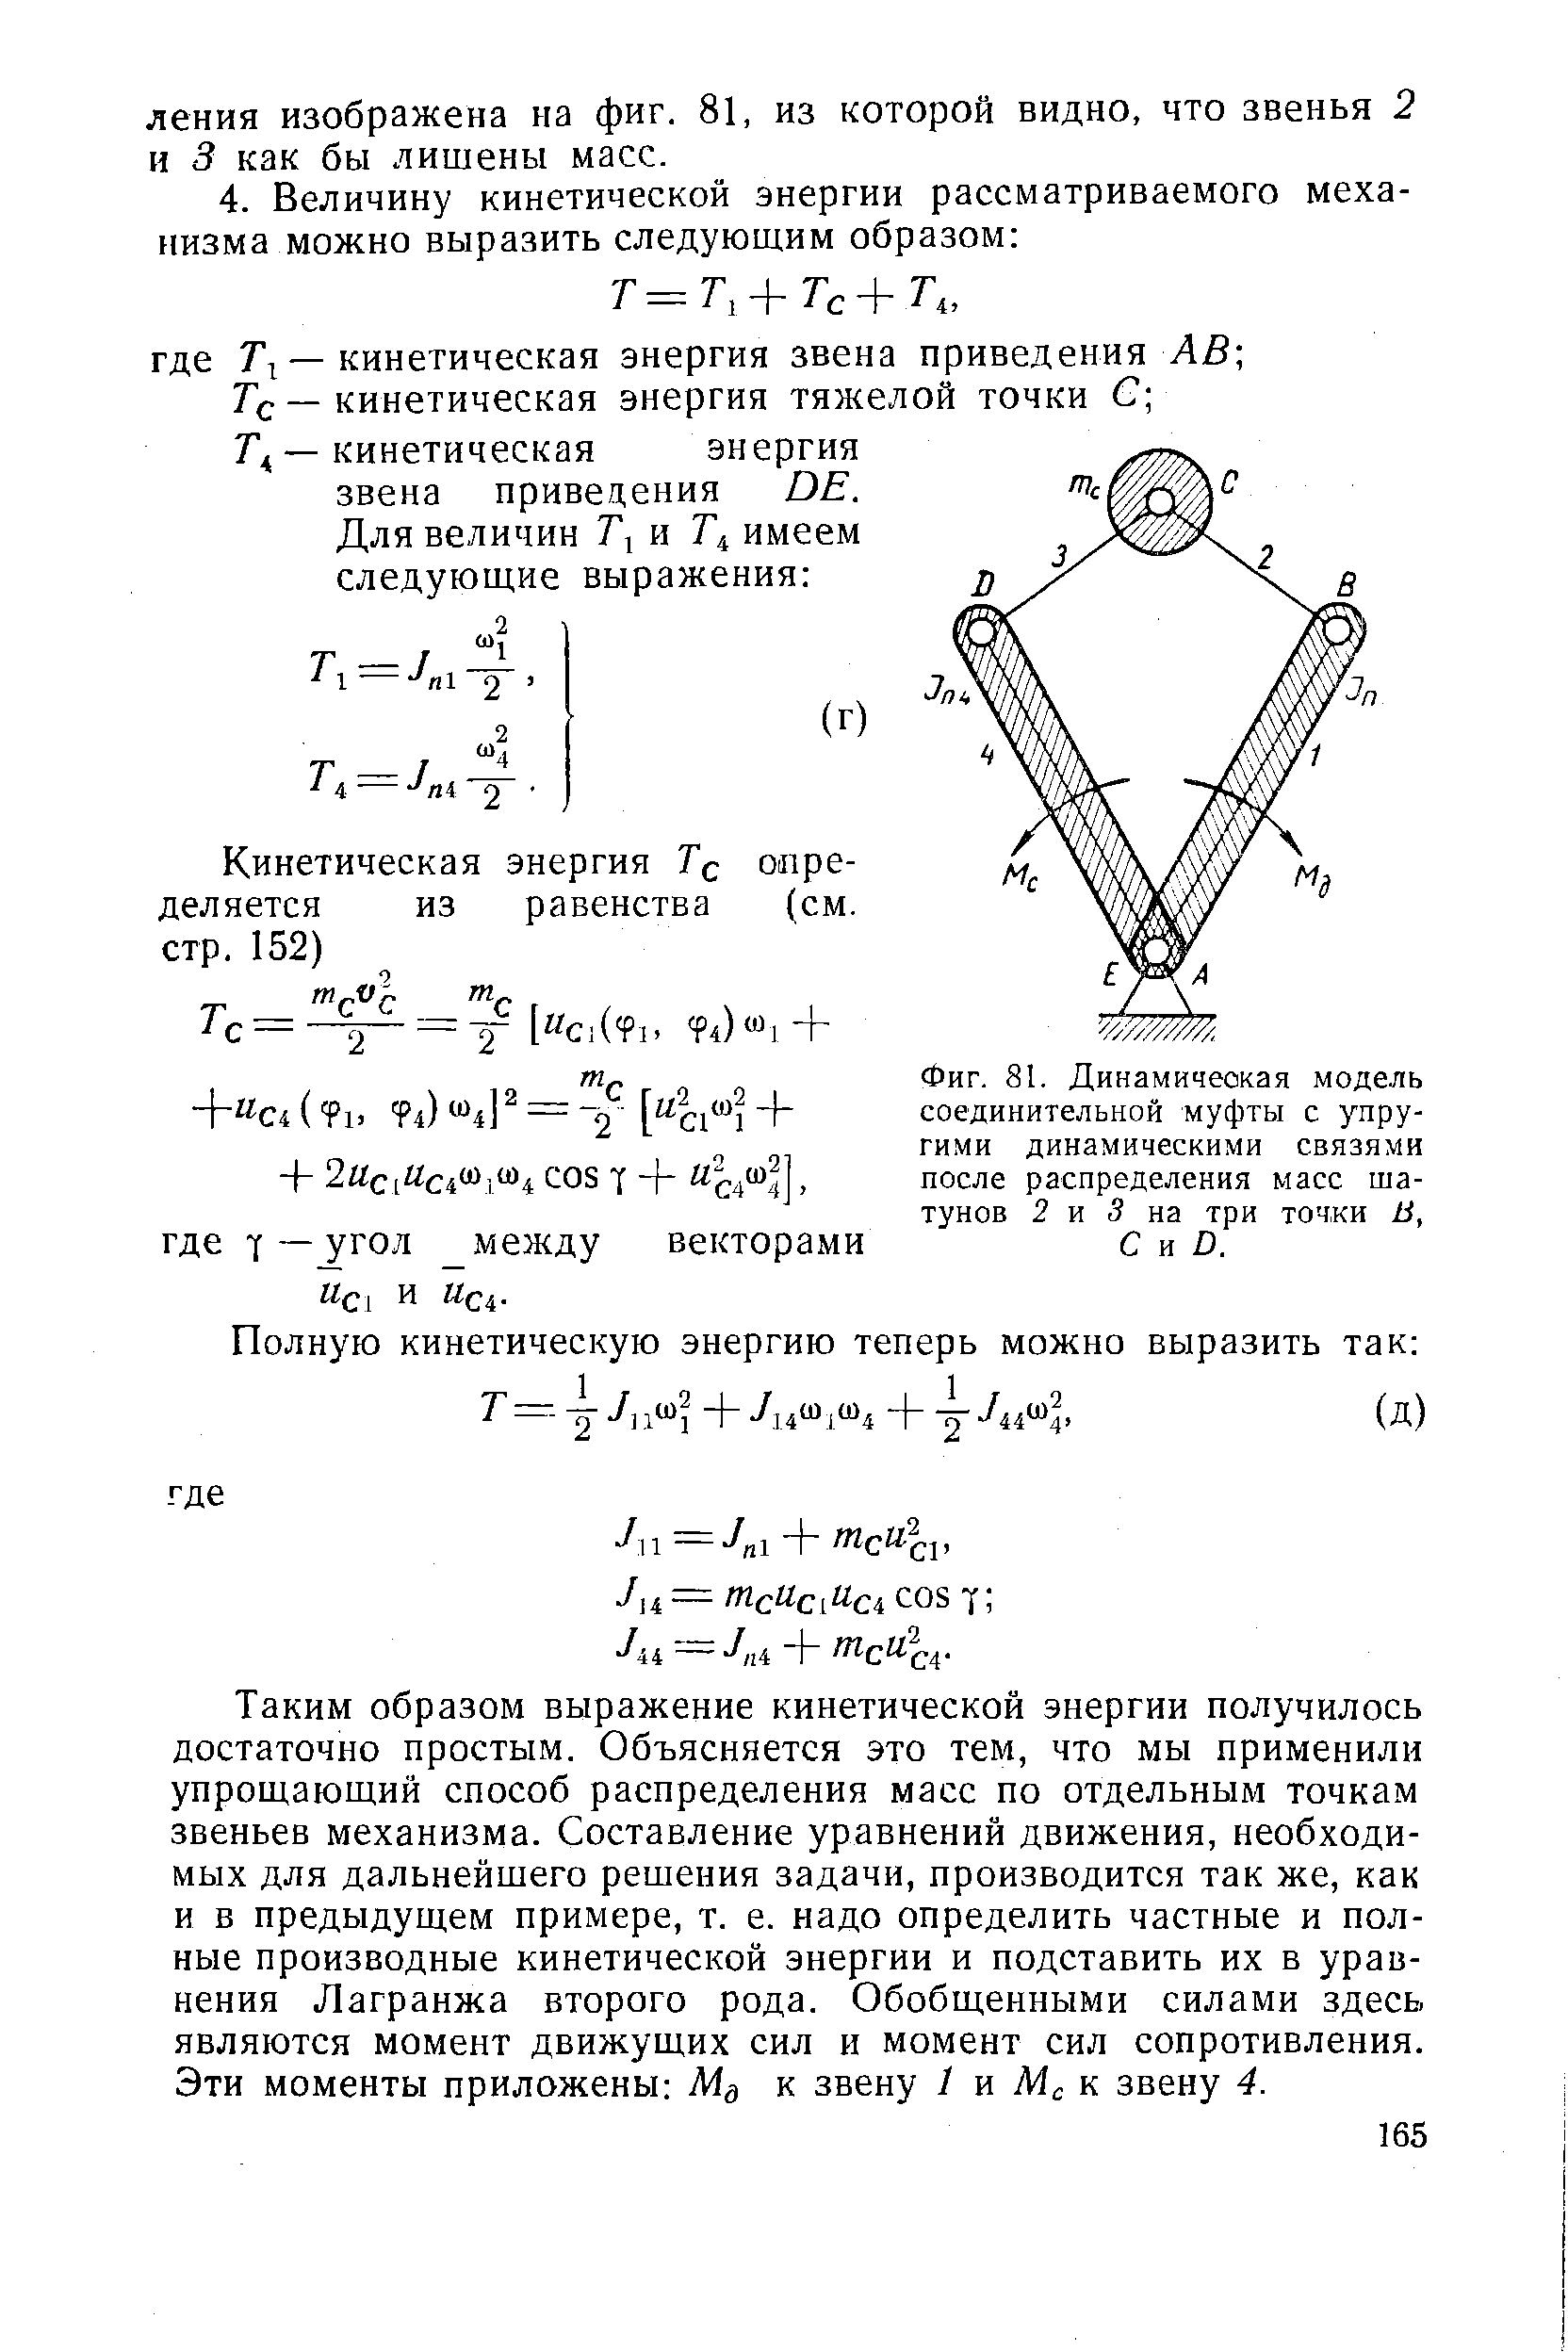 Фиг. 81. Динамическая модель соединительной муфты с упругими динамическими связями после распределения масс шатунов 2 и 3 на три точки В, С и D.
